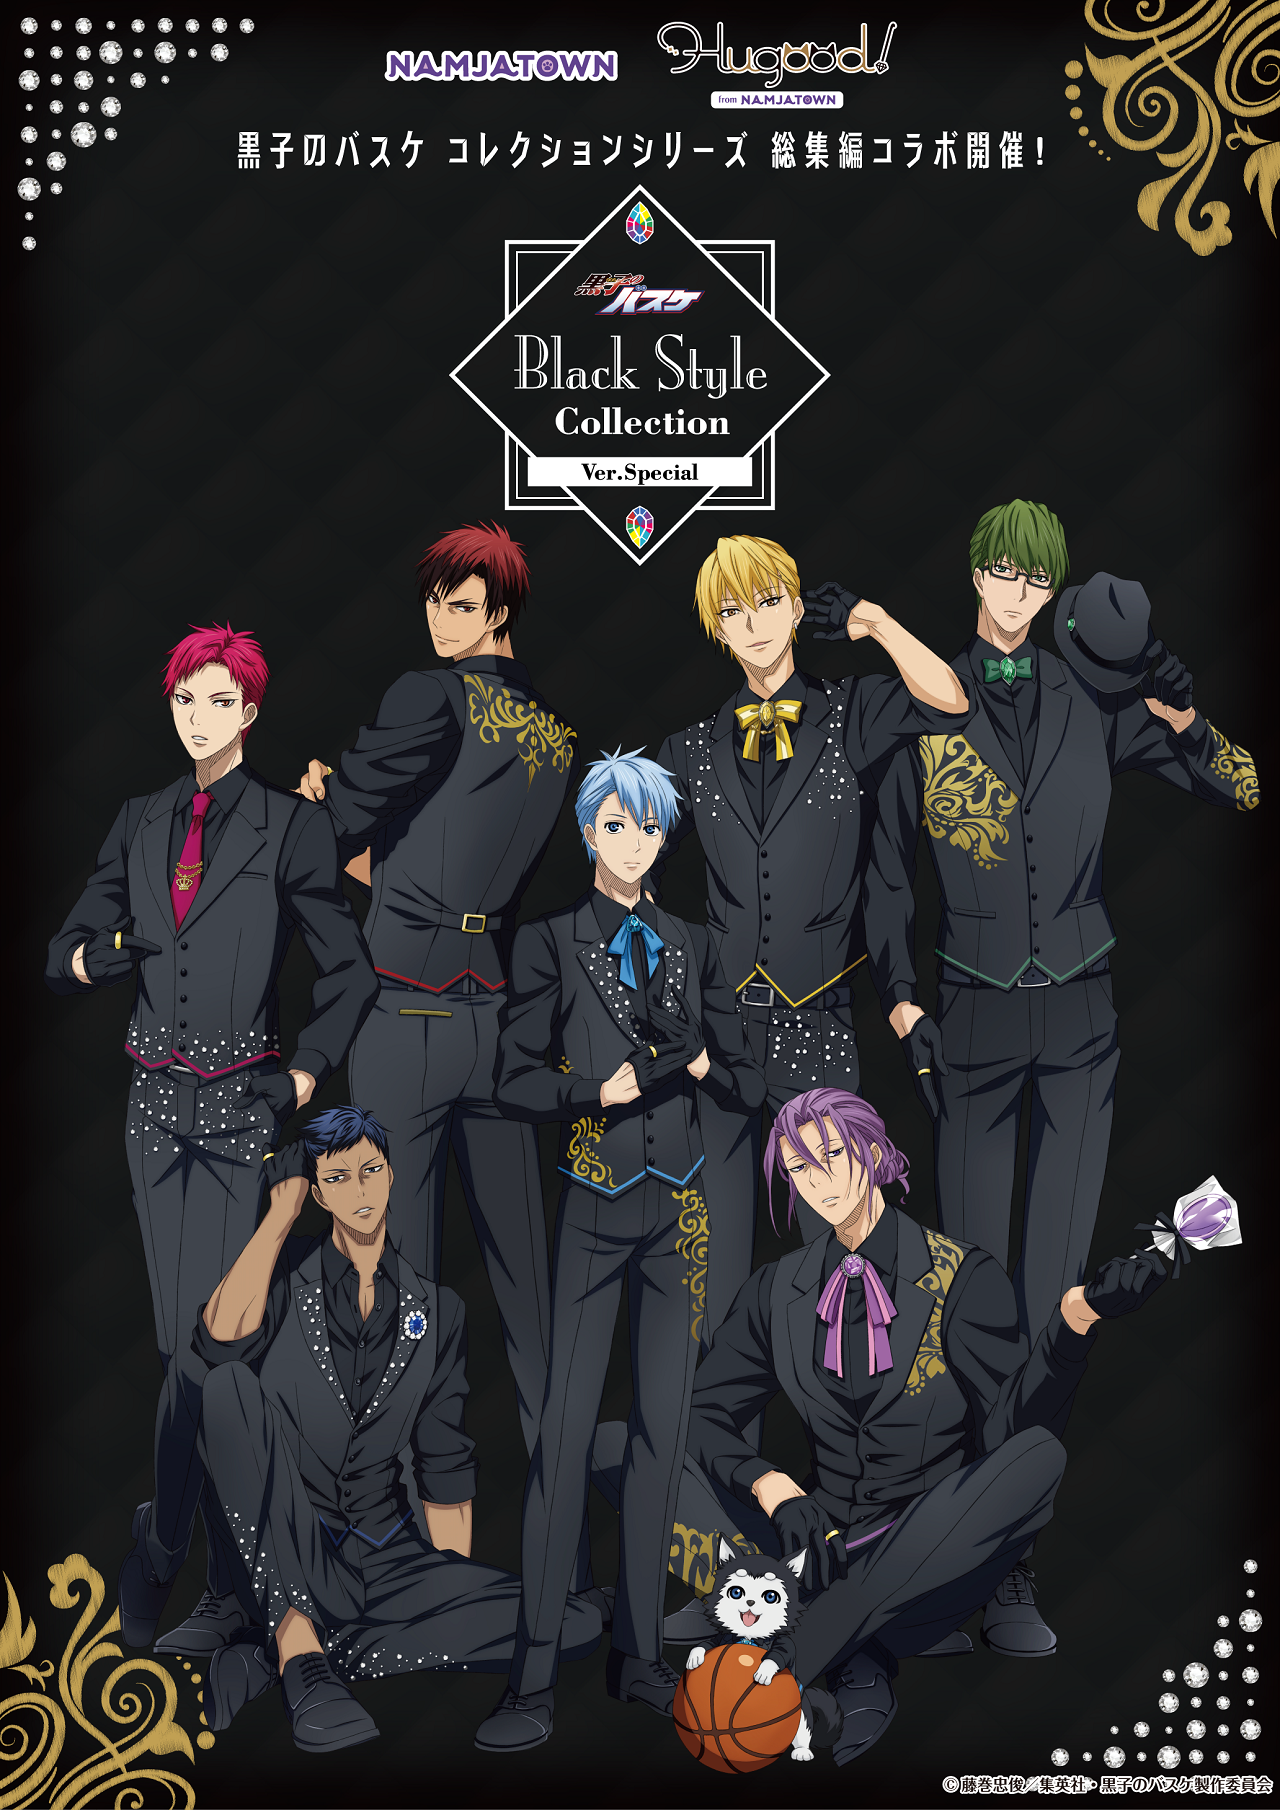 「黒子のバスケ Black Style Collection Ver. Special」